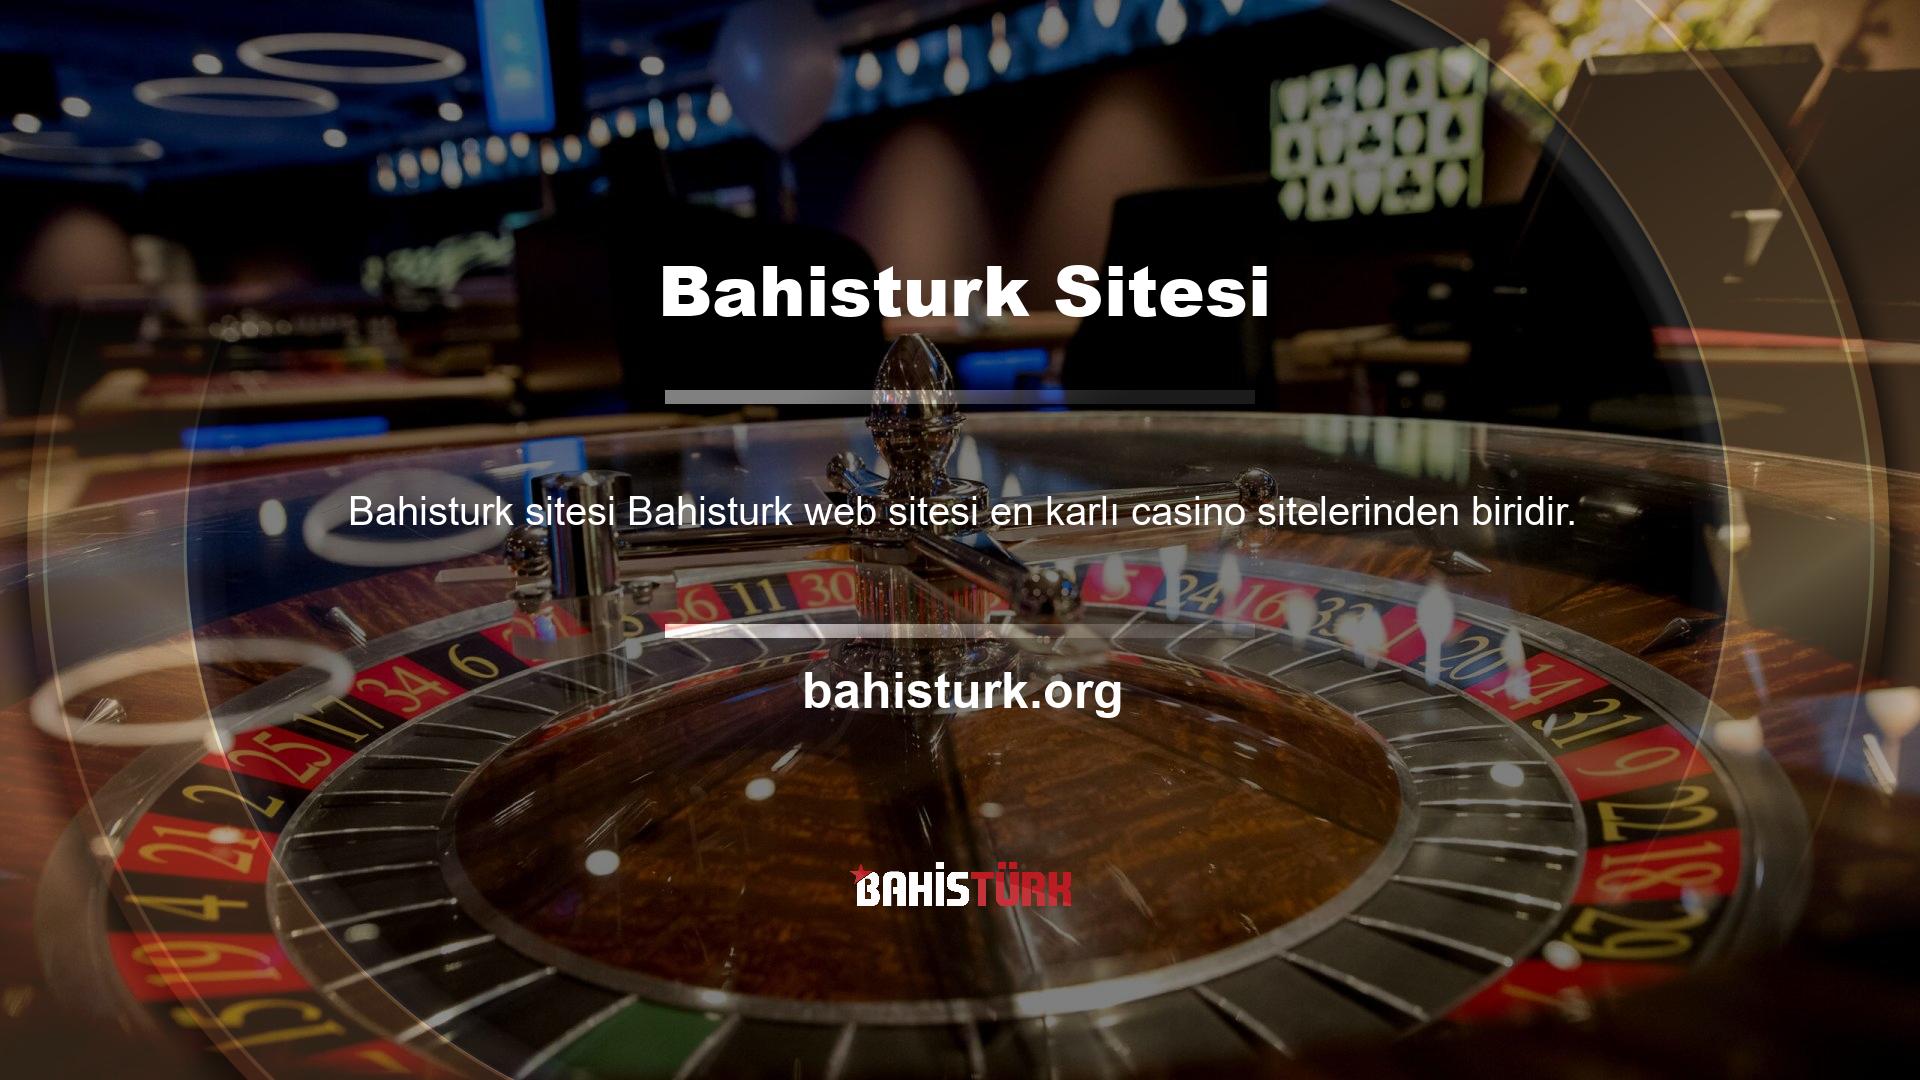 Bu bahis sitesinin hizmet seçeneklerine baktığınızda genellikle poker oyunları ve casino oyunlarını göreceksiniz